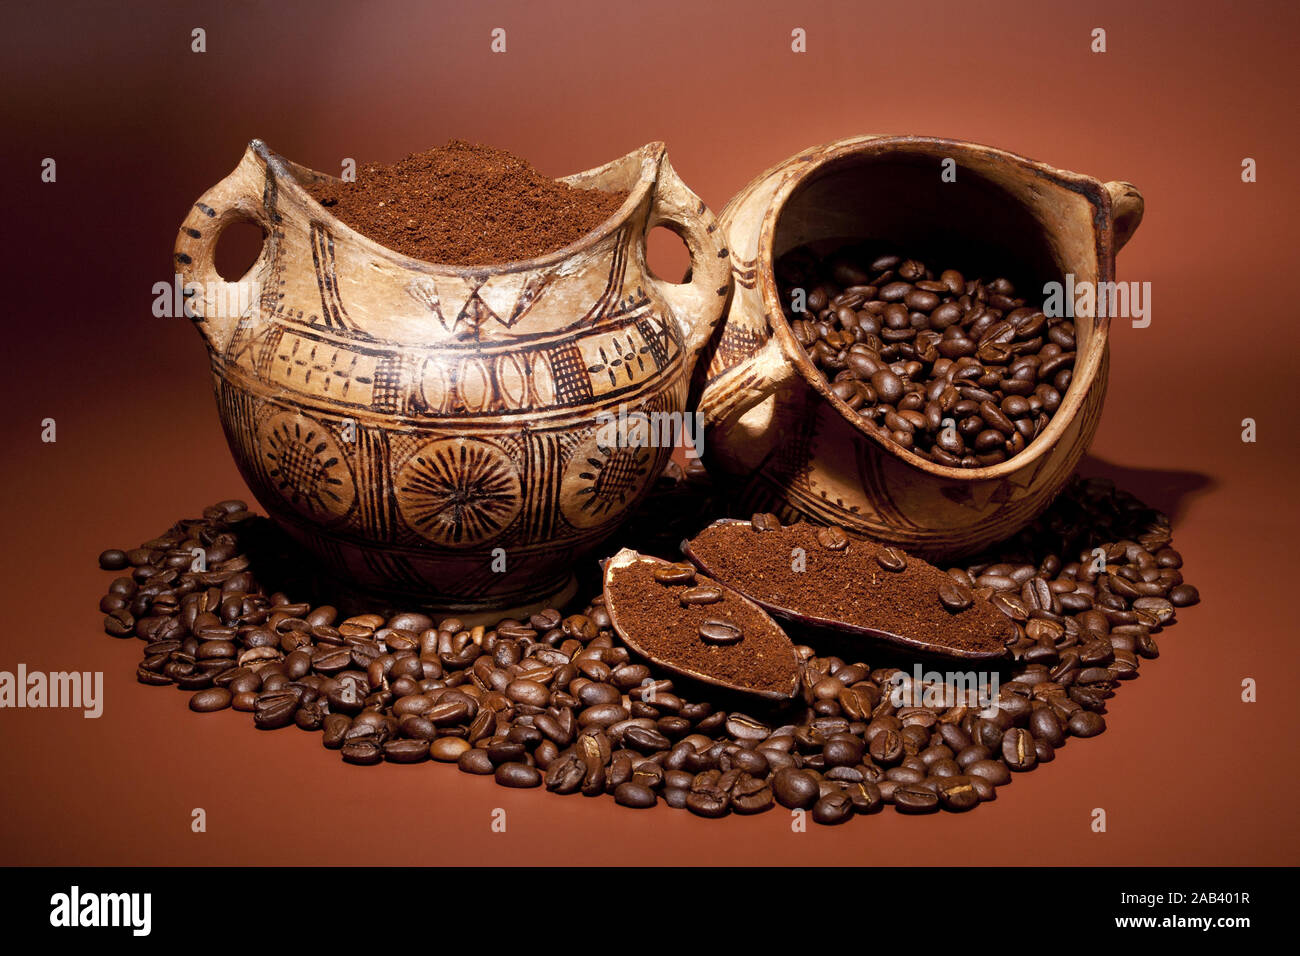 Frisch gemahlener Kaffee und Kaffeebohnen in Terrakottatoepfen |caffè appena macinato e i chicchi di caffè in vasi di terracotta| Foto Stock